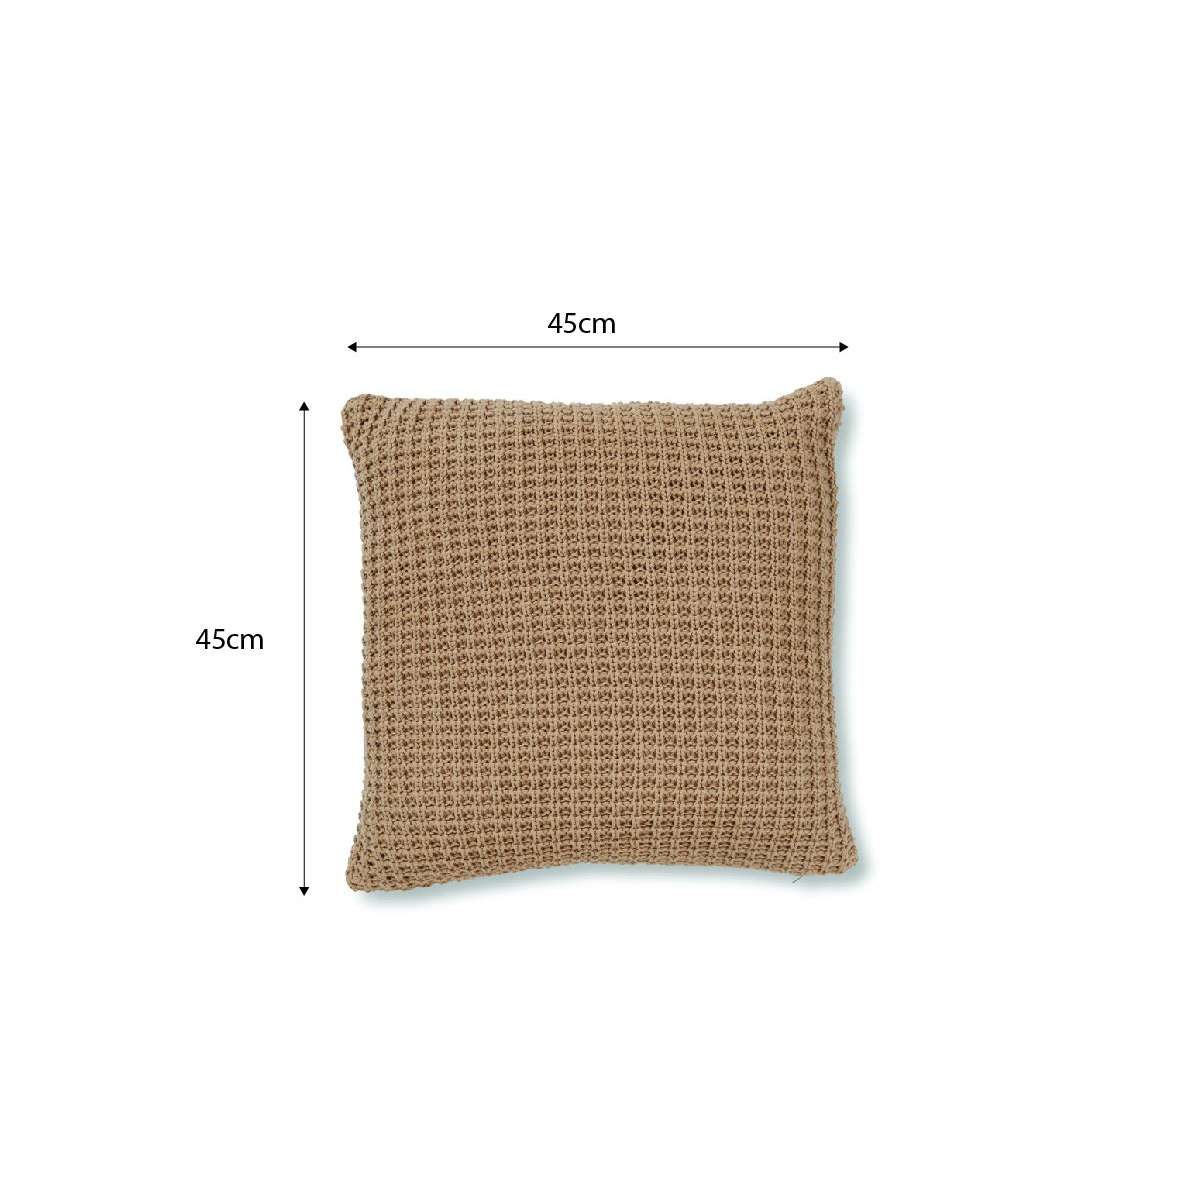 Brennan Knit Cushion Cover - Latte